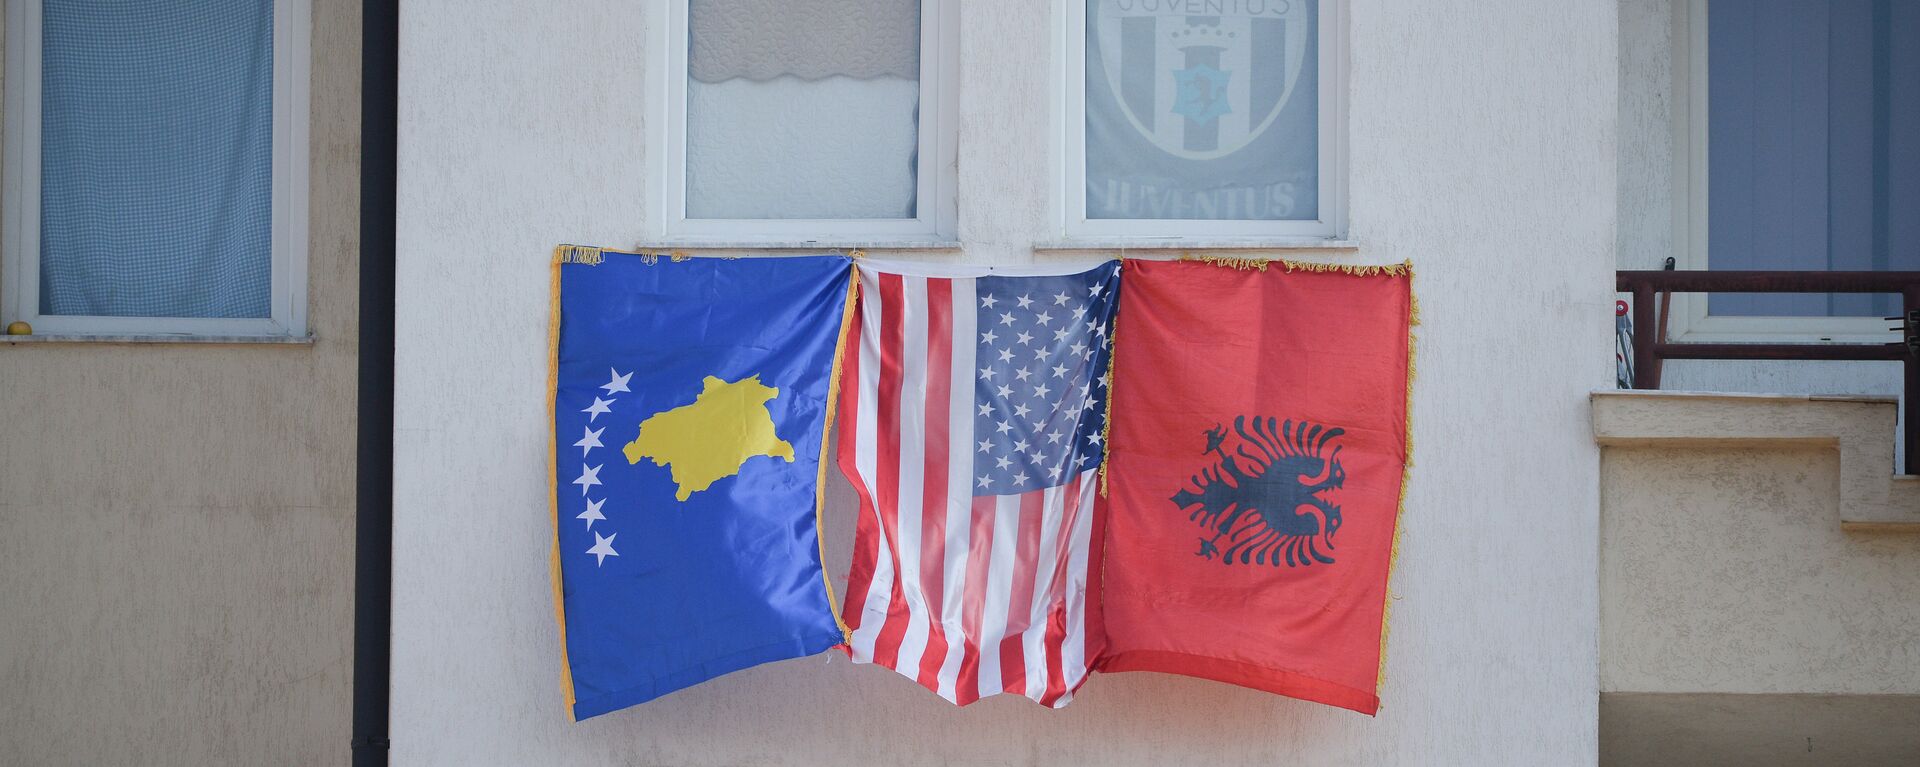 Zastave tzv. Kosova, SAD i Albanije u Prištini - Sputnik Srbija, 1920, 03.12.2021